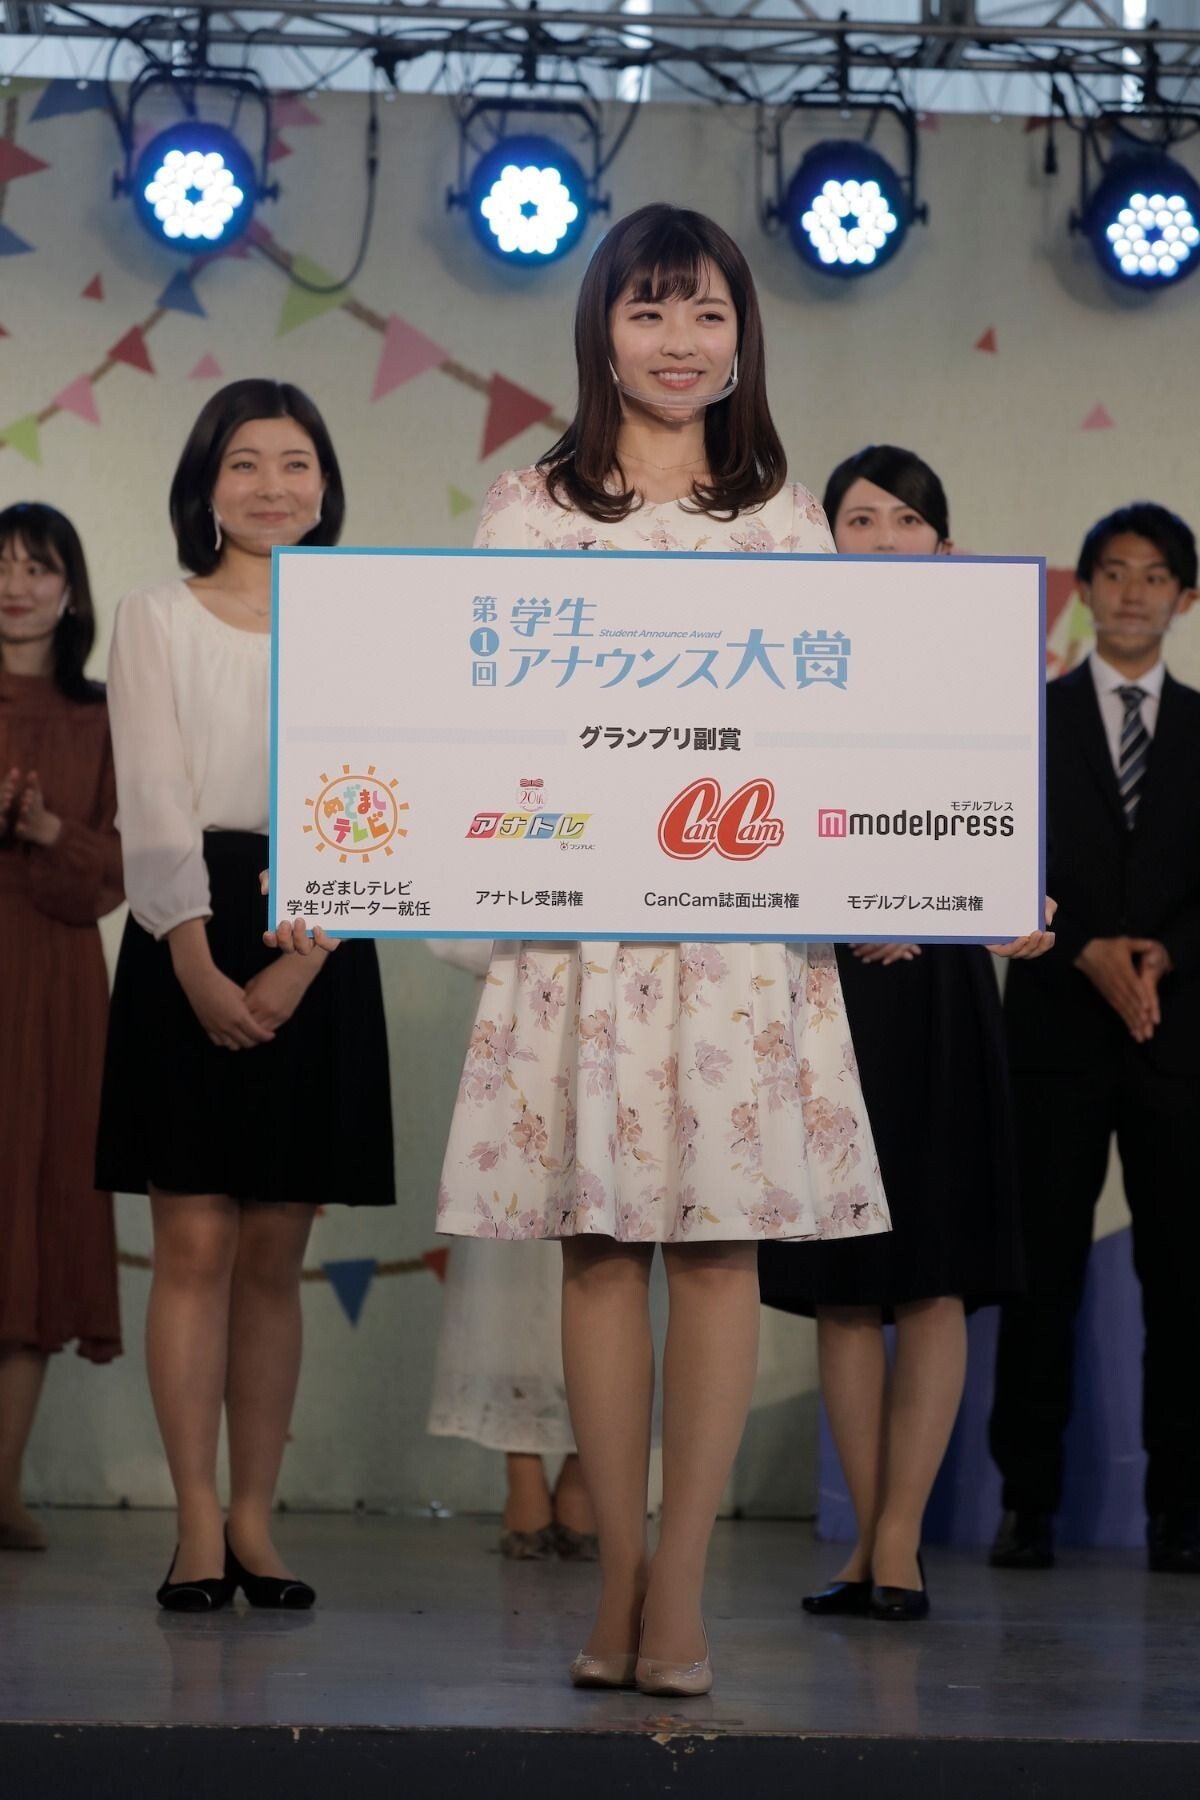 일본 아나운서 지망 학생 미인대회 수상자 - 꾸르